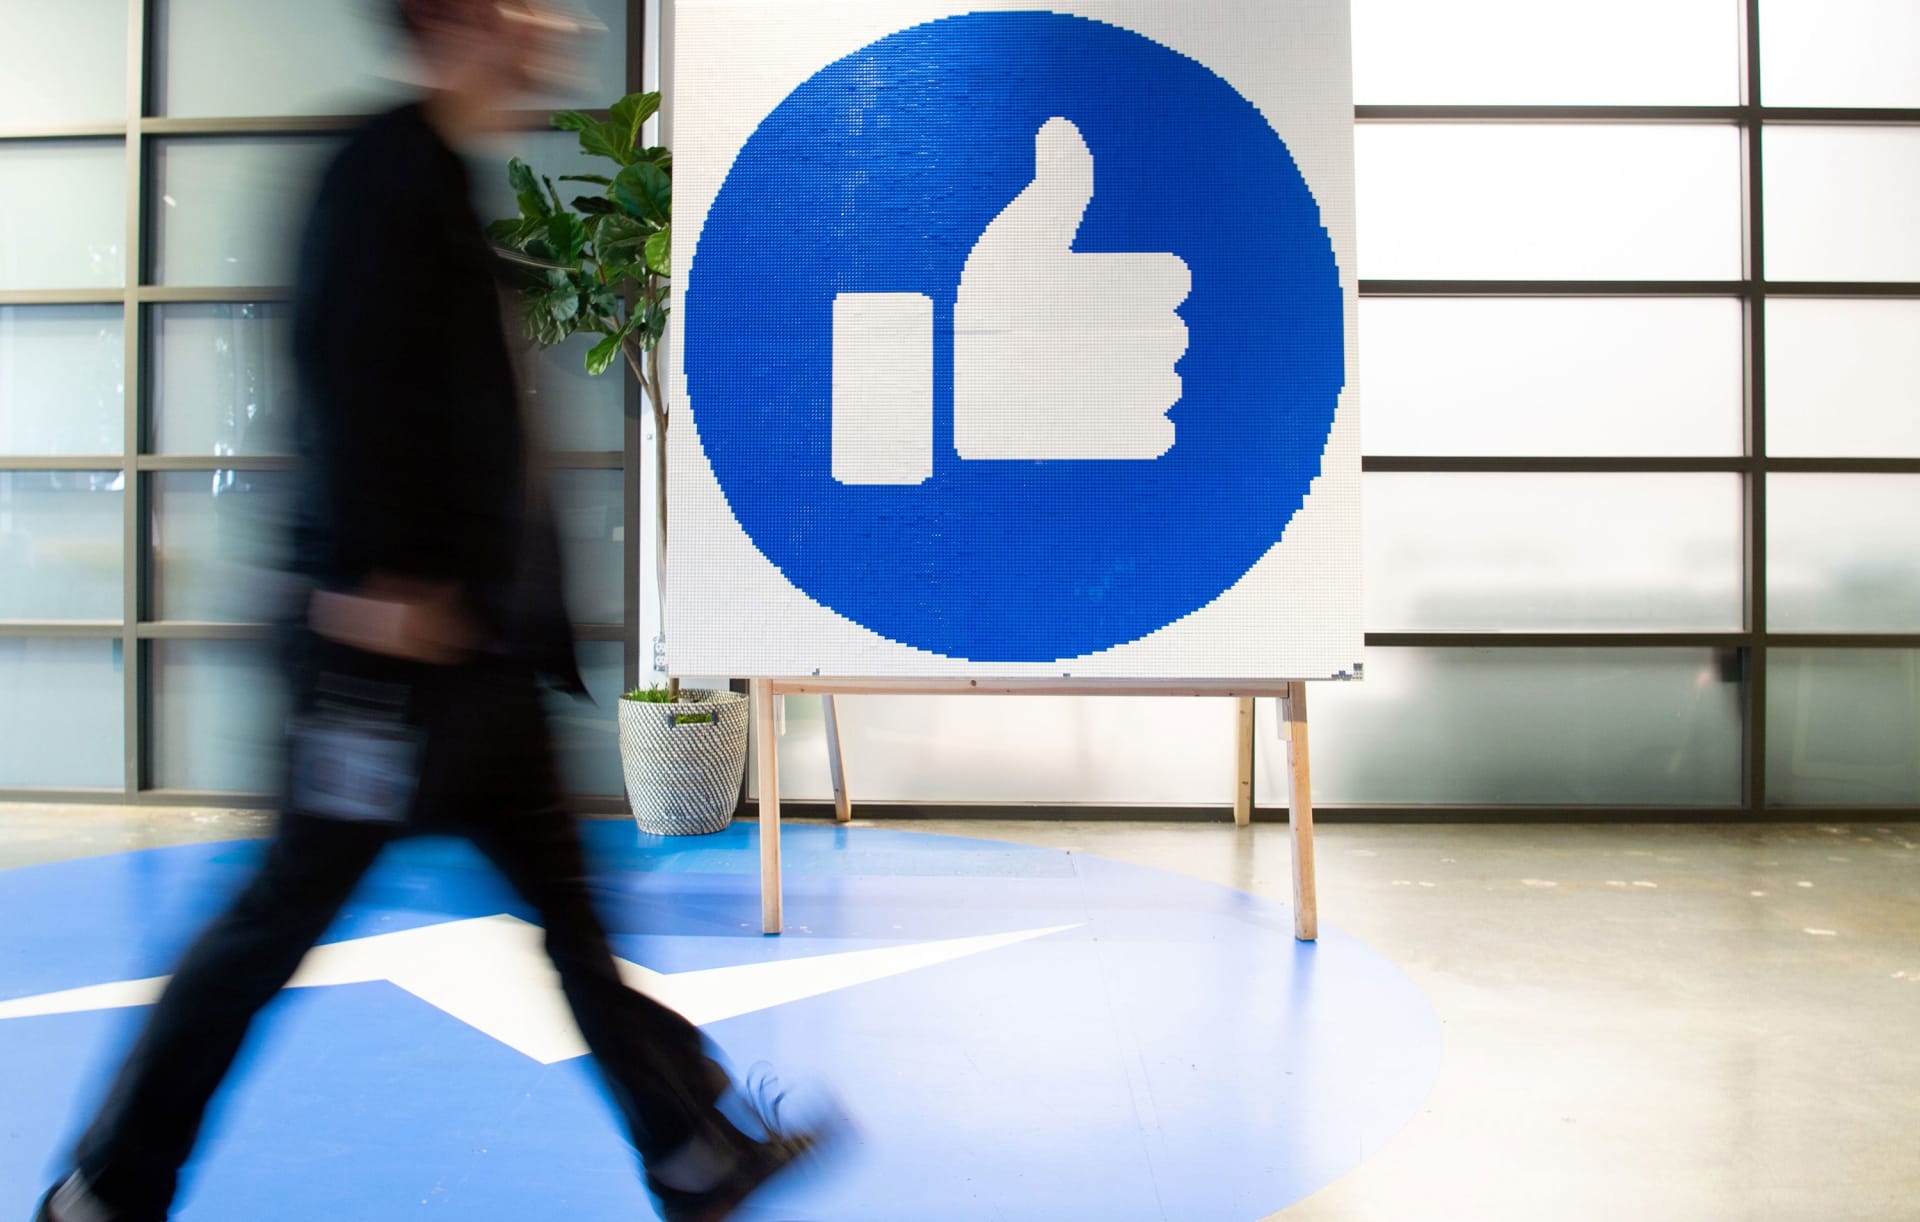 فيسبوك سيسمح بتداول الأخبار في أستراليا مجدداً بعد محادثات مع الحكومة